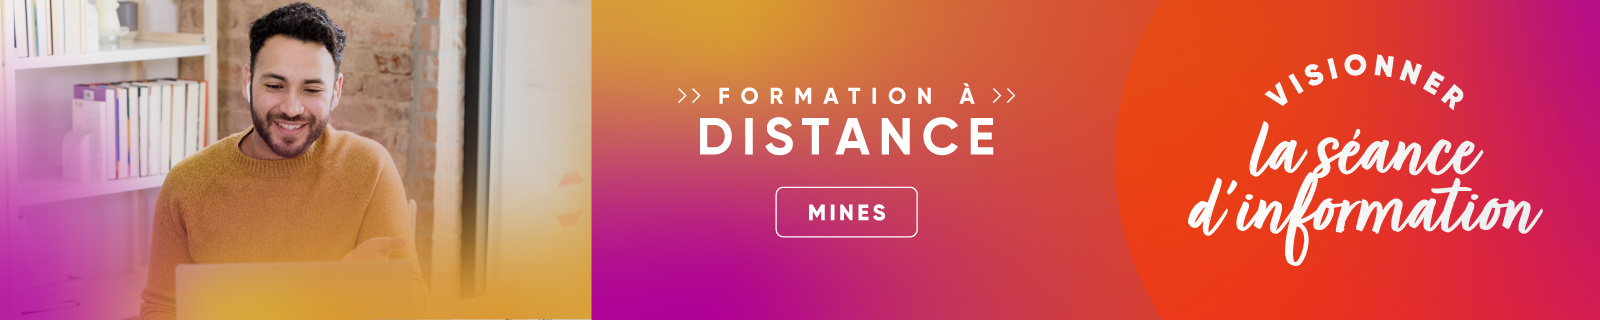 Séance d'information - Formation à distance - Mines et environnement